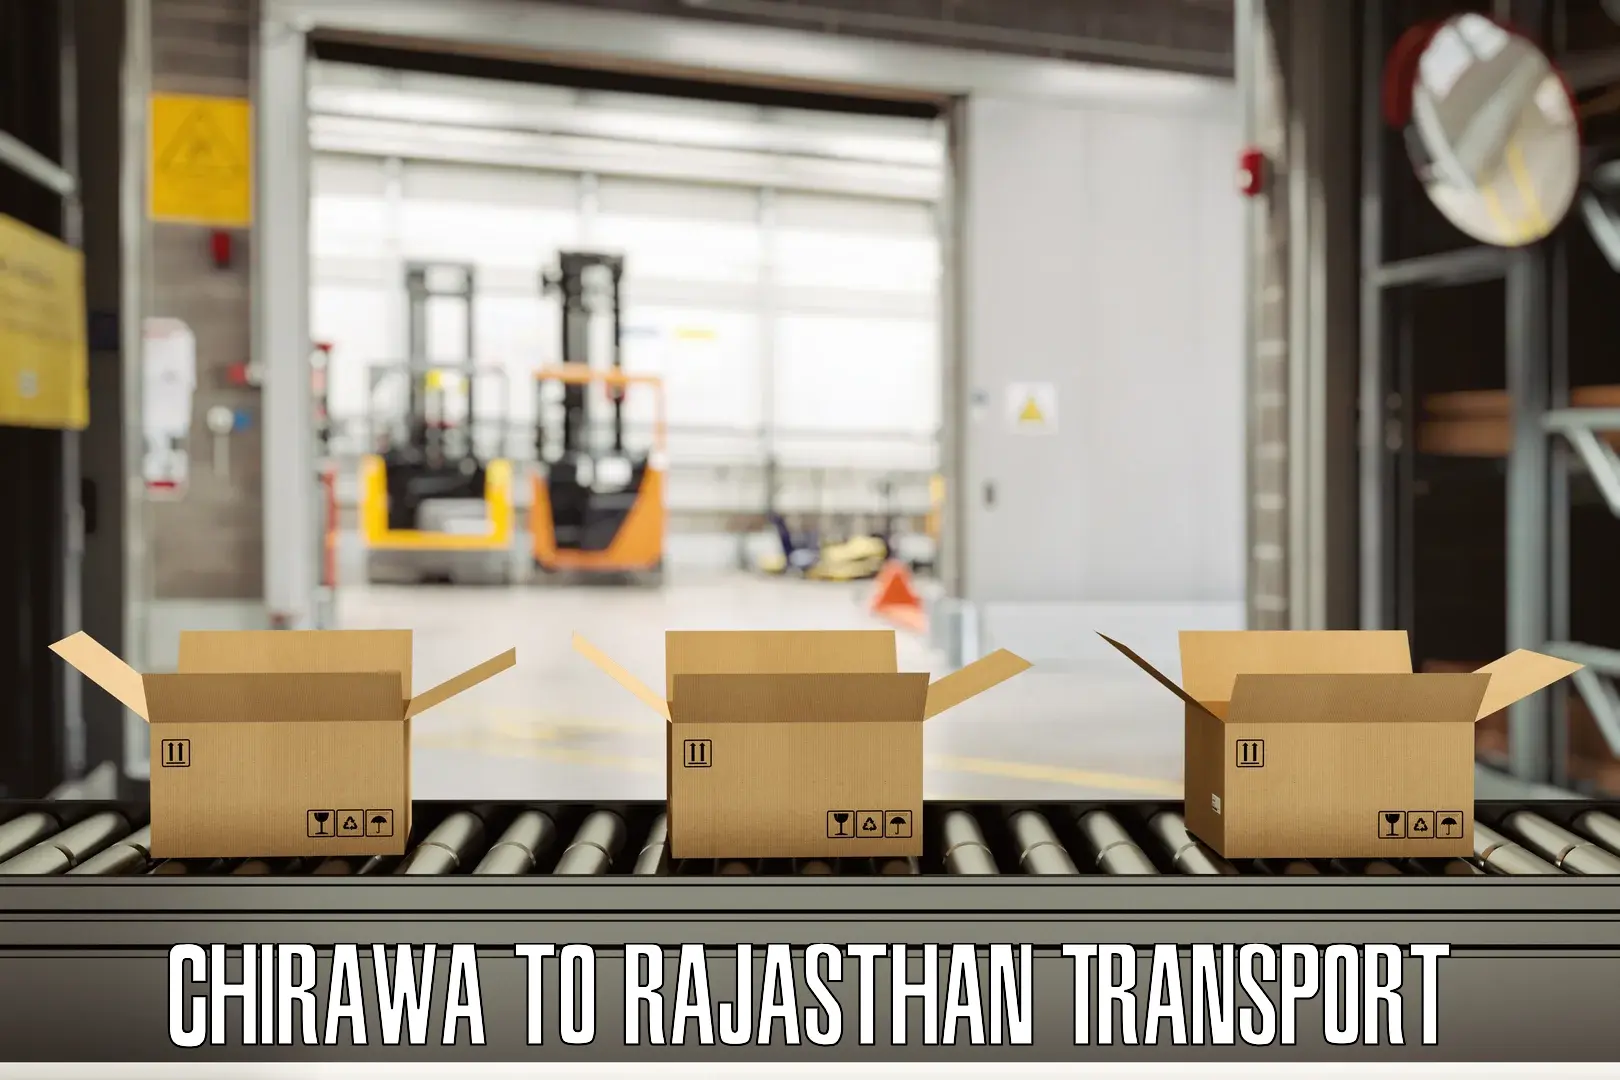 Daily transport service Chirawa to Jaipur